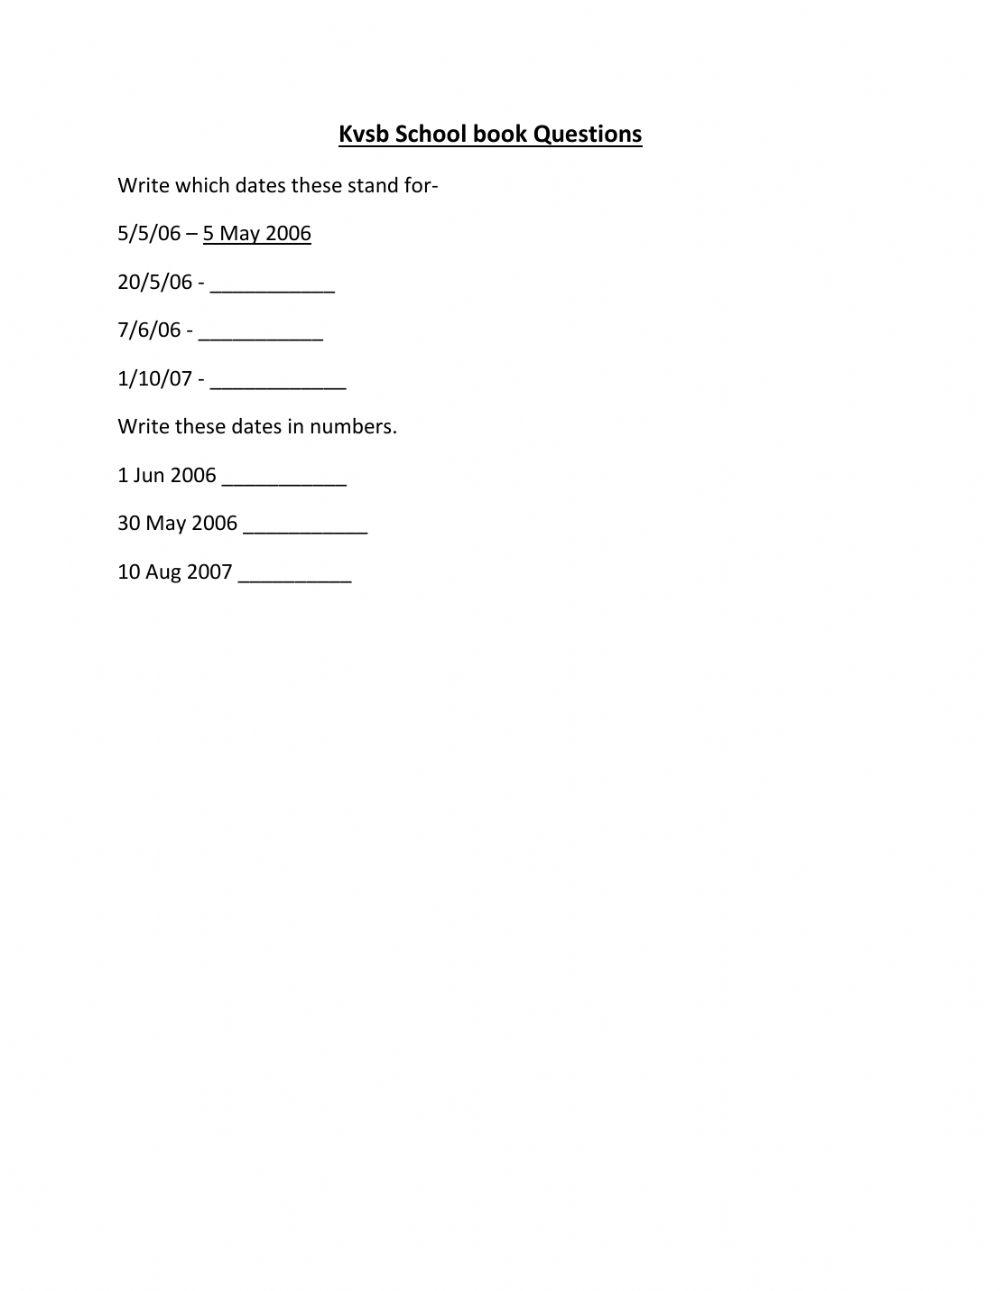 Maths KVSB worksheet by KVSB student 